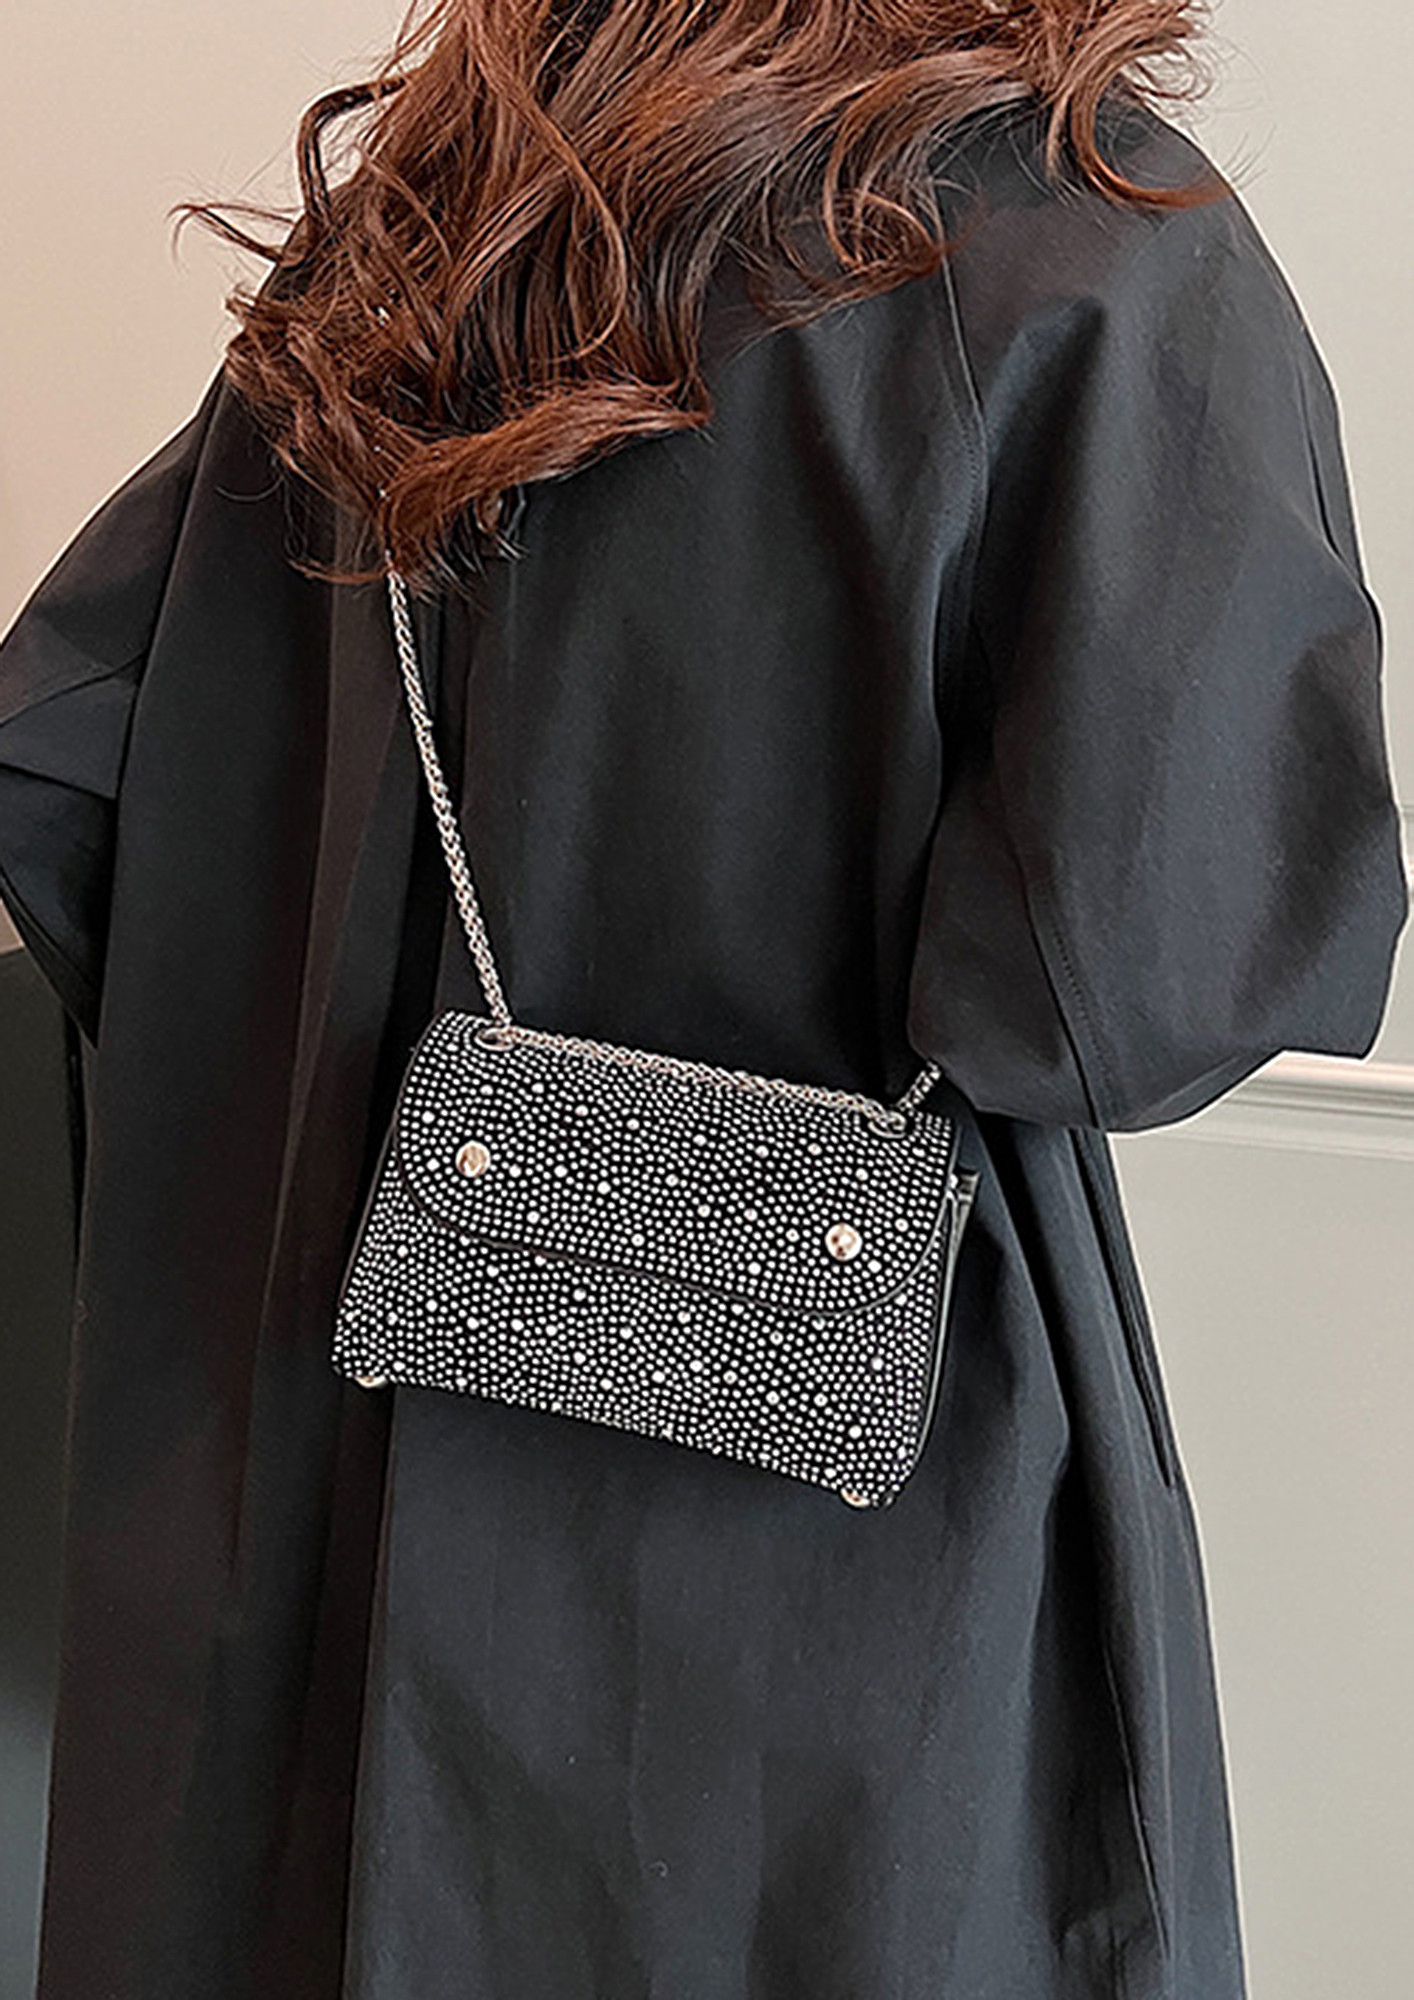 Glitter Sling Bag | Women's sling bag | gift for her | Best gift for g –  BBD GIFTS